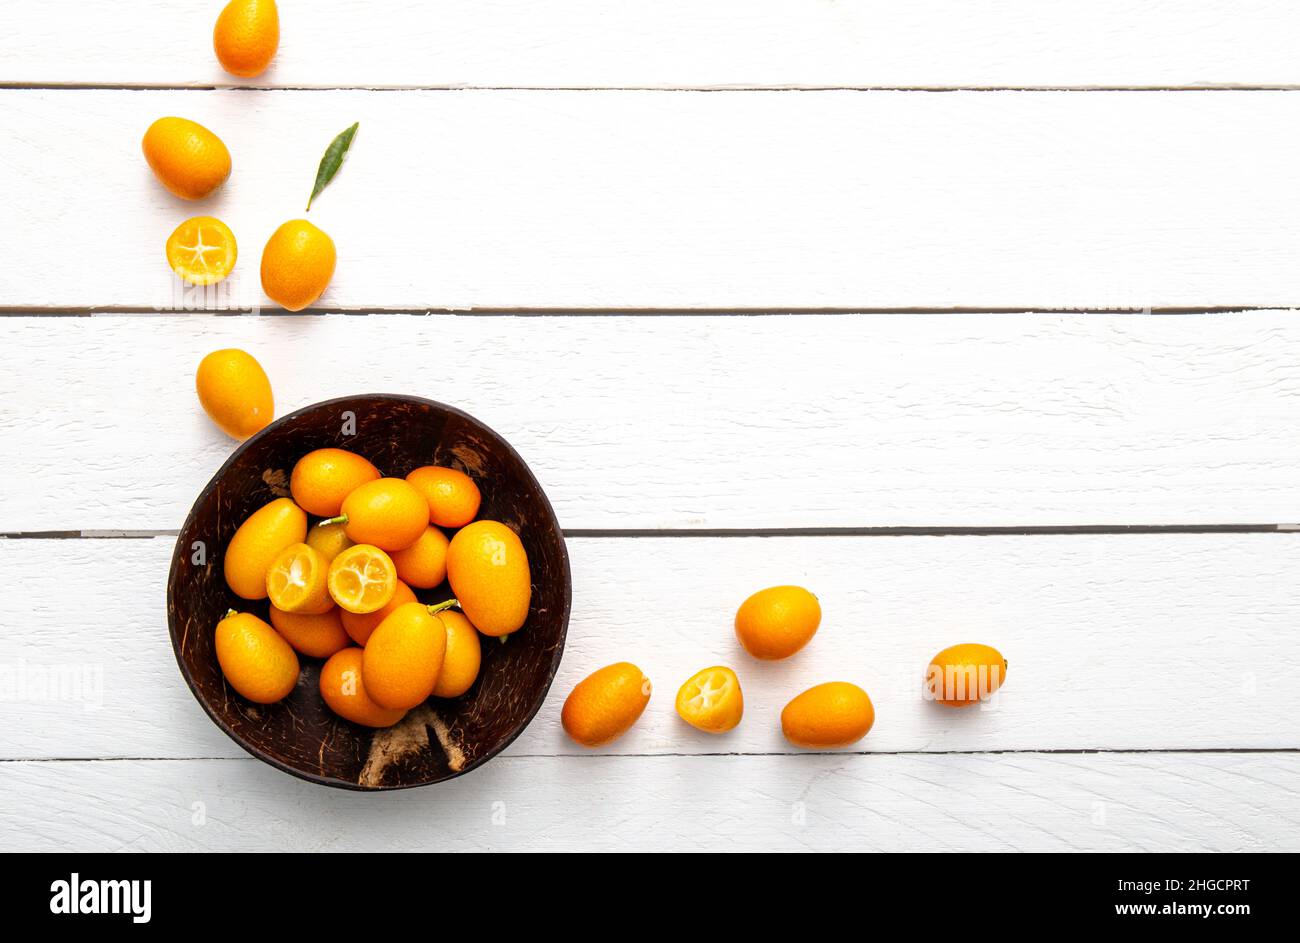 Kumquats ou cumquats ( Citrus japonica) à l'intérieur d'un bol de noix de coco et sur fond de bois blanc.Concept de bordure de cadre alimentaire aux agrumes. Banque D'Images